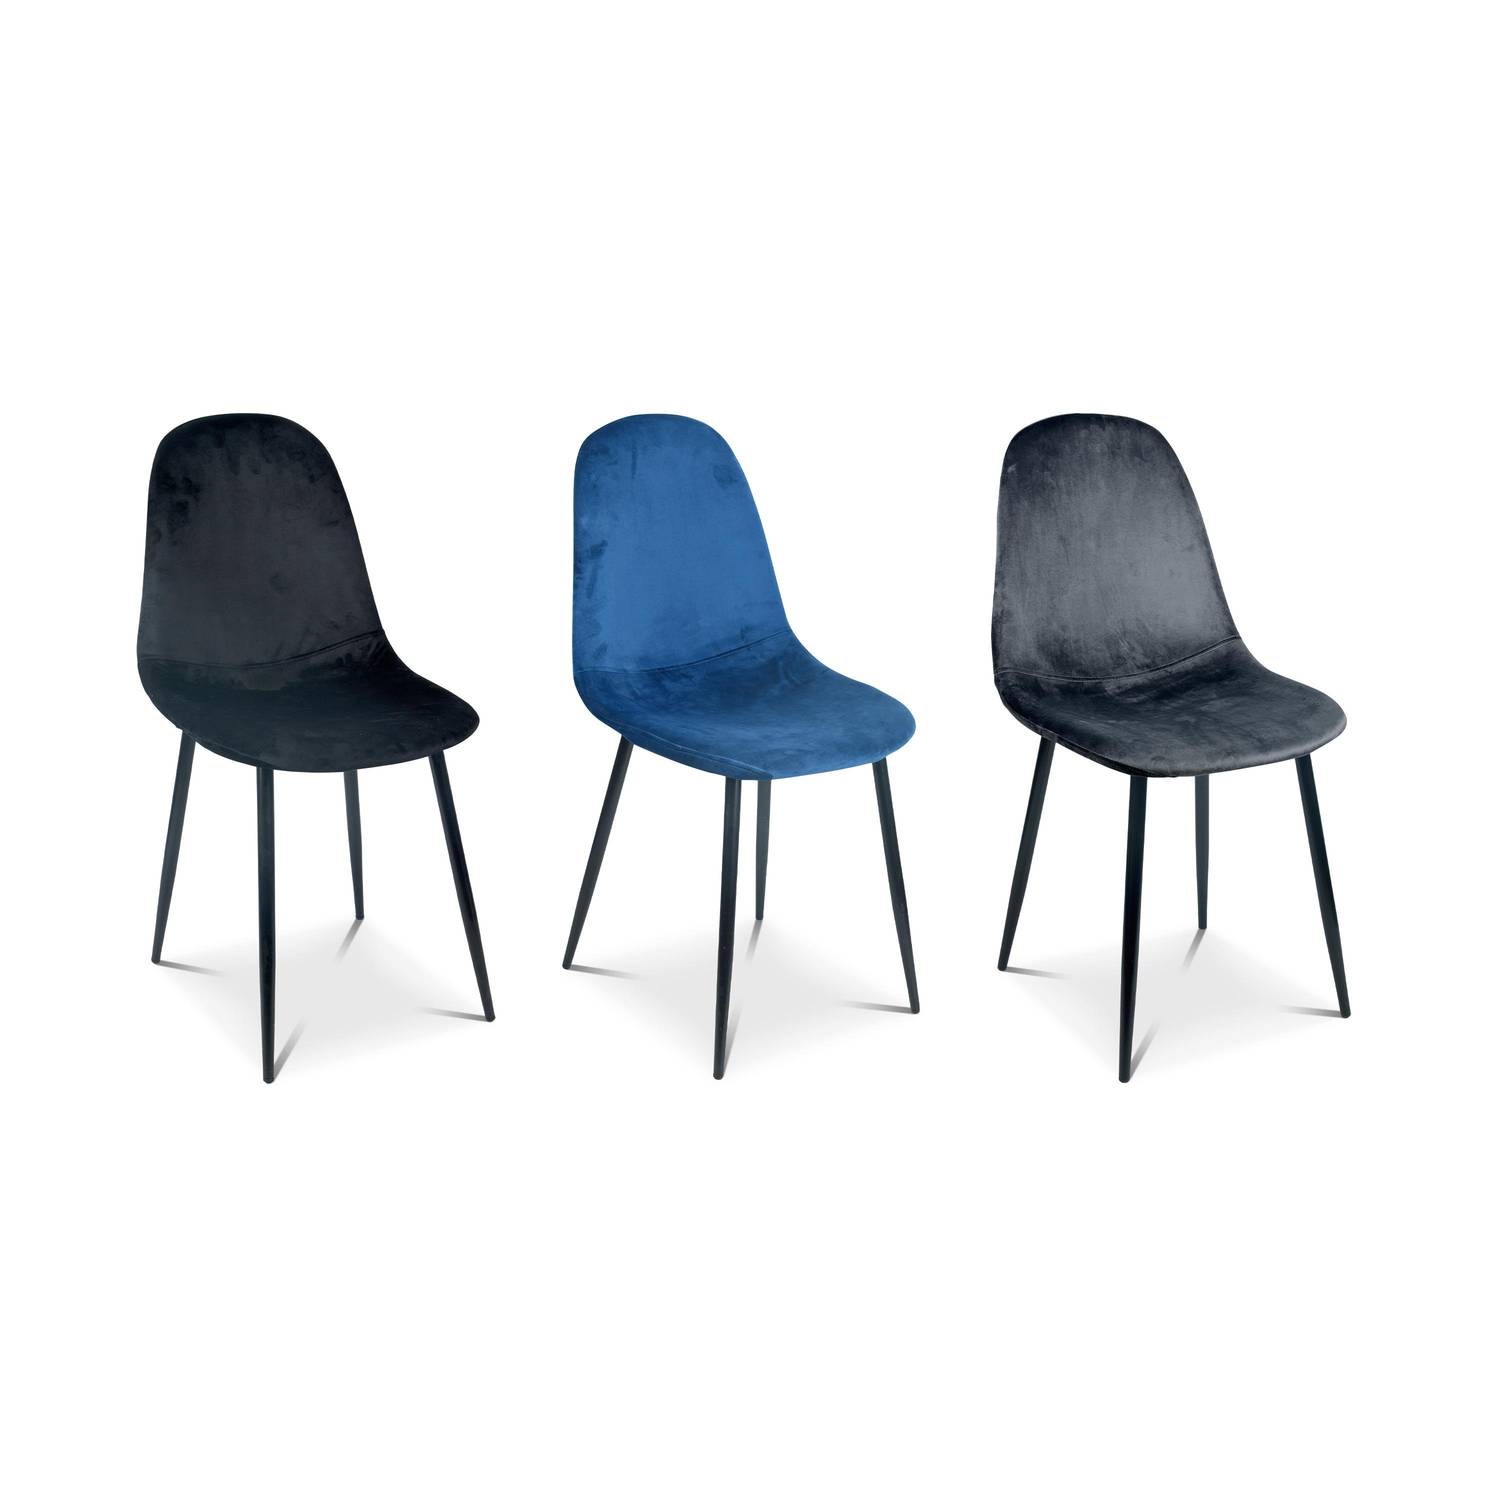 4er-Set Stühle – Bombay – Samtstühle, Blau, Metallbeine, Vintage, bequem, Design, Stahlrahmen, B44x T53 x H88cm Photo6